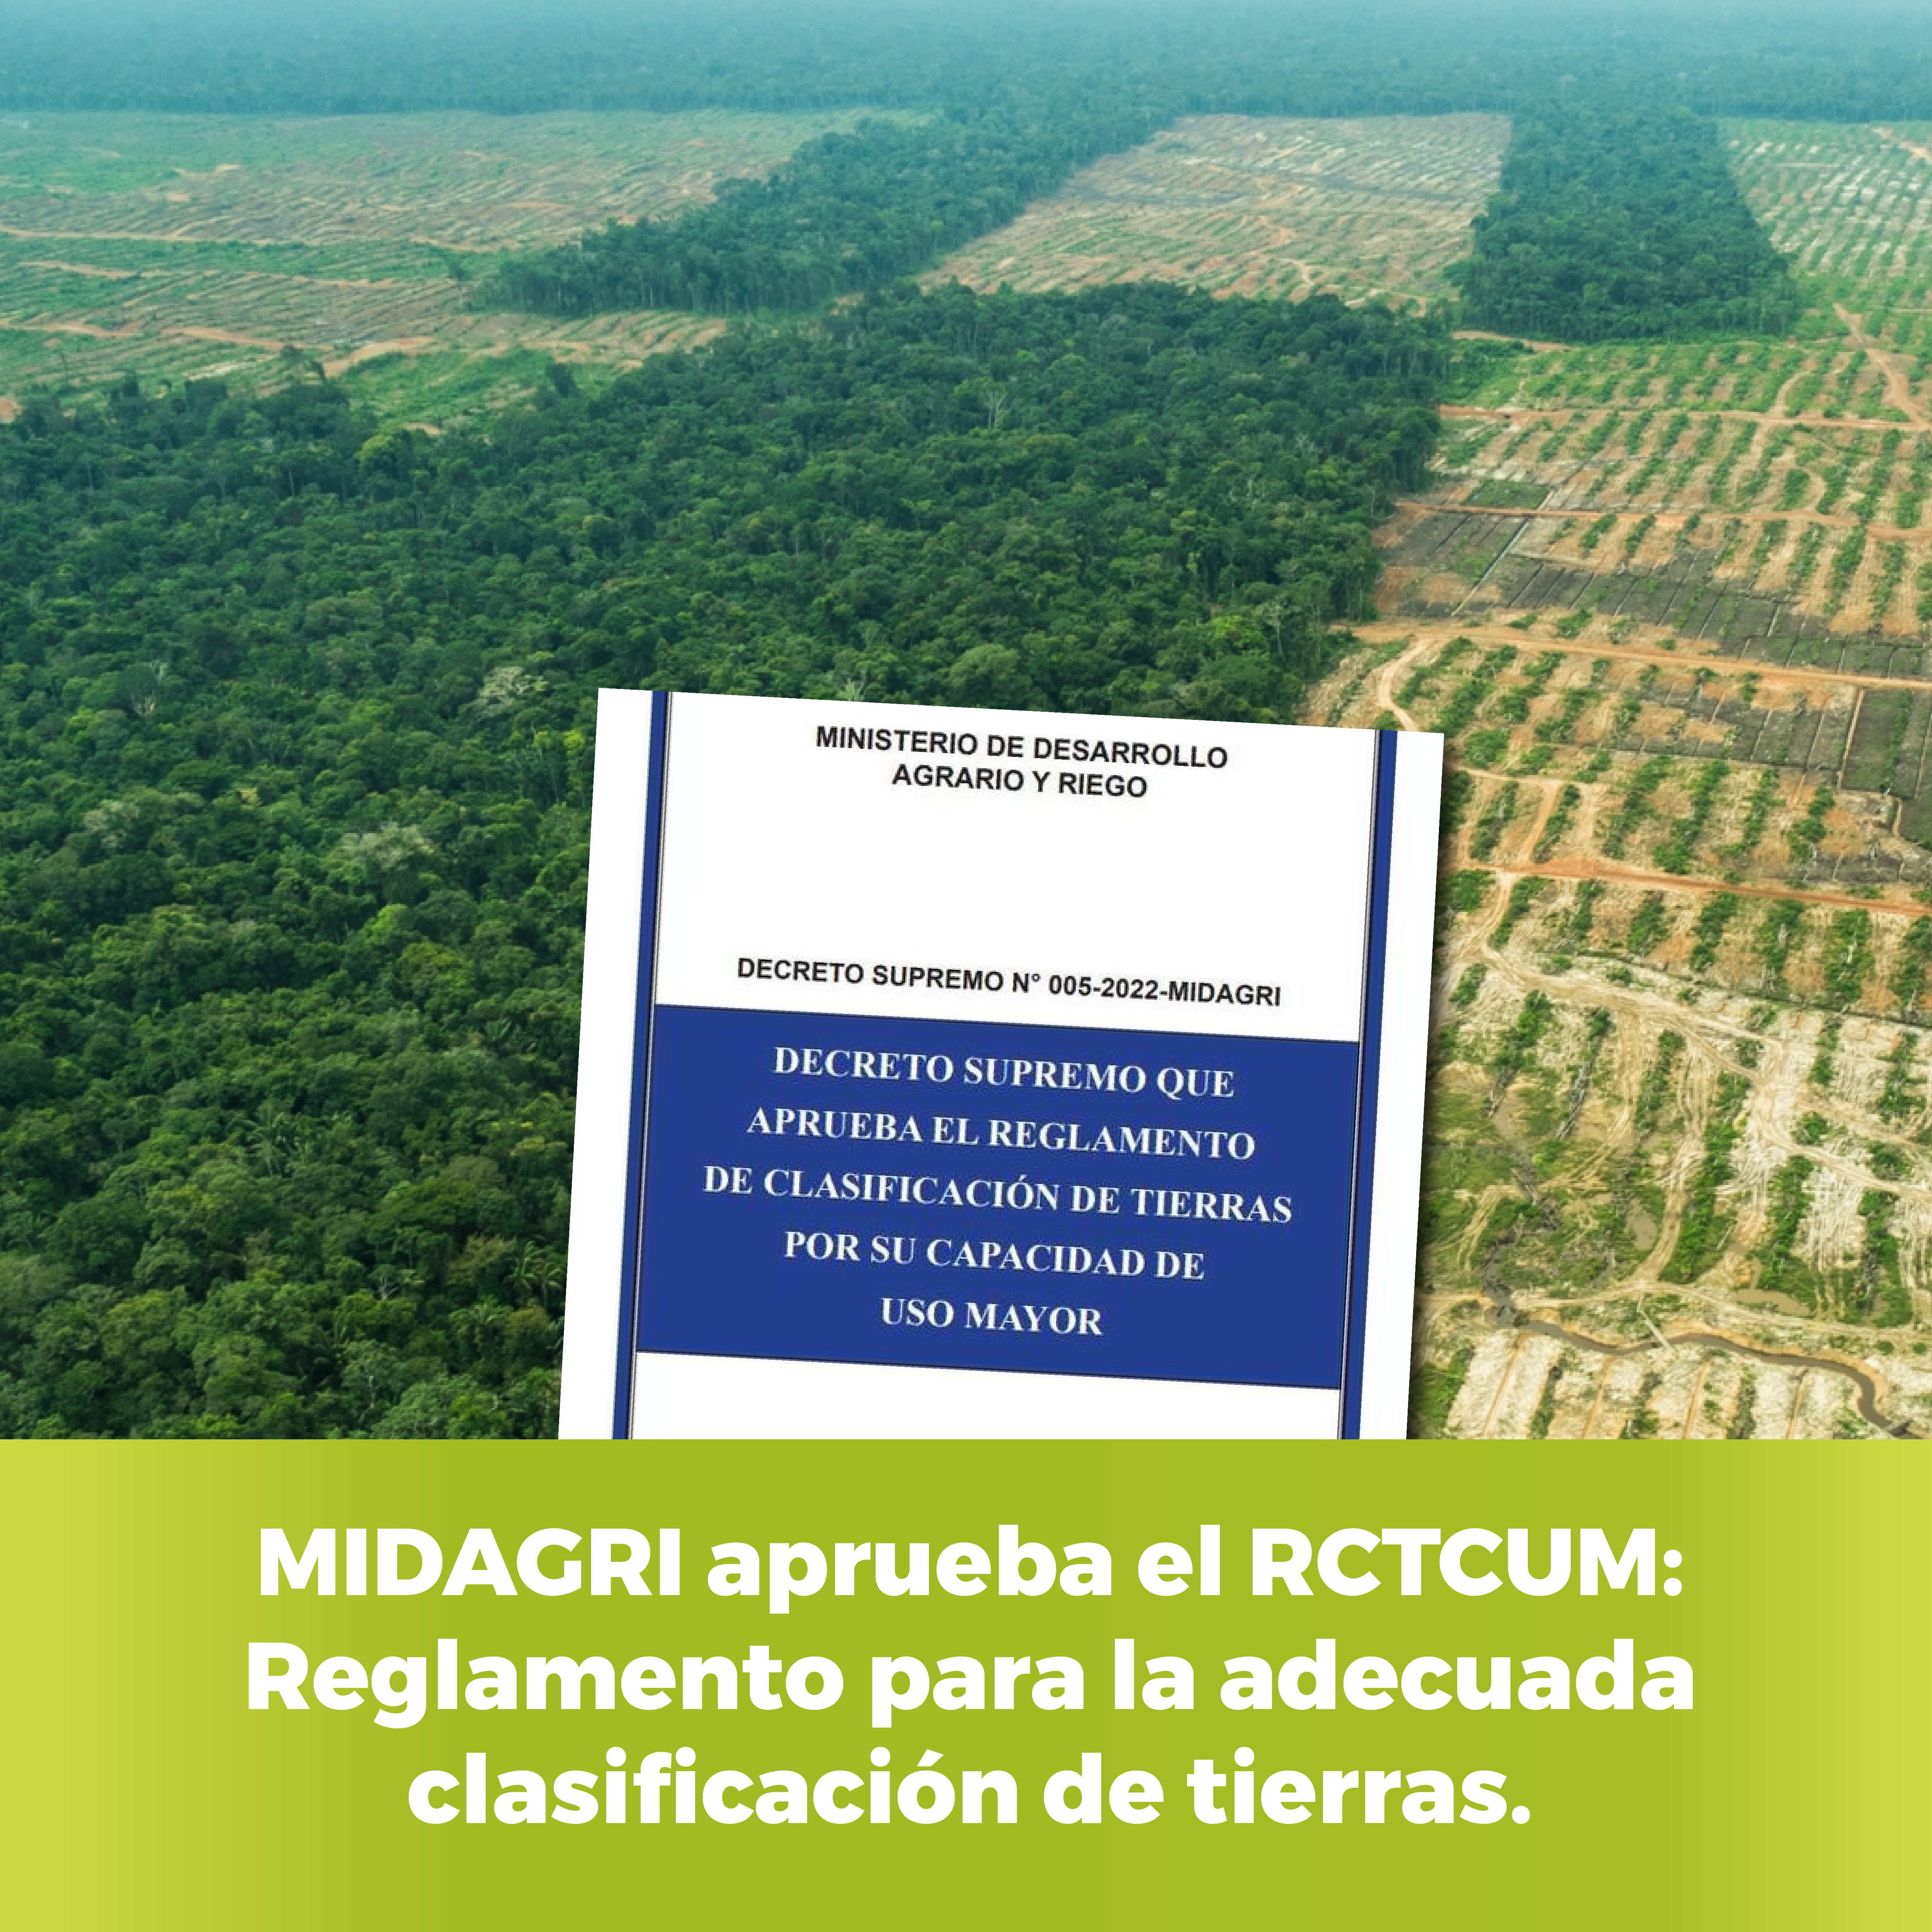 MIDAGRI aprueba el RCTCUM: Reglamento para la adecuada clasificación de tierras